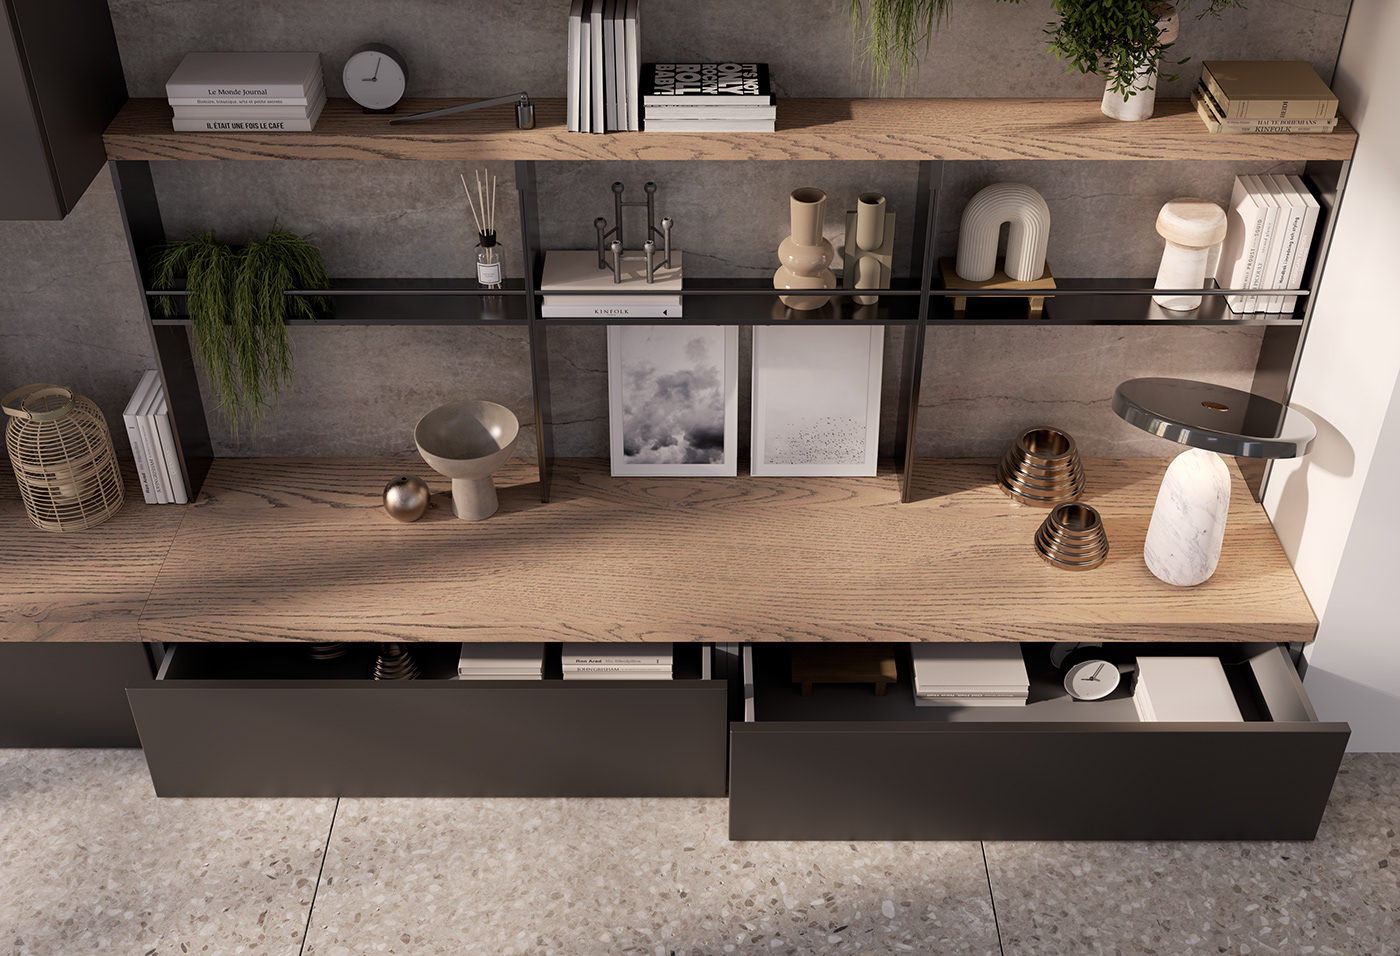 2022 design 3D architecture CGI design inspiration interior design  kitchen Render rendering